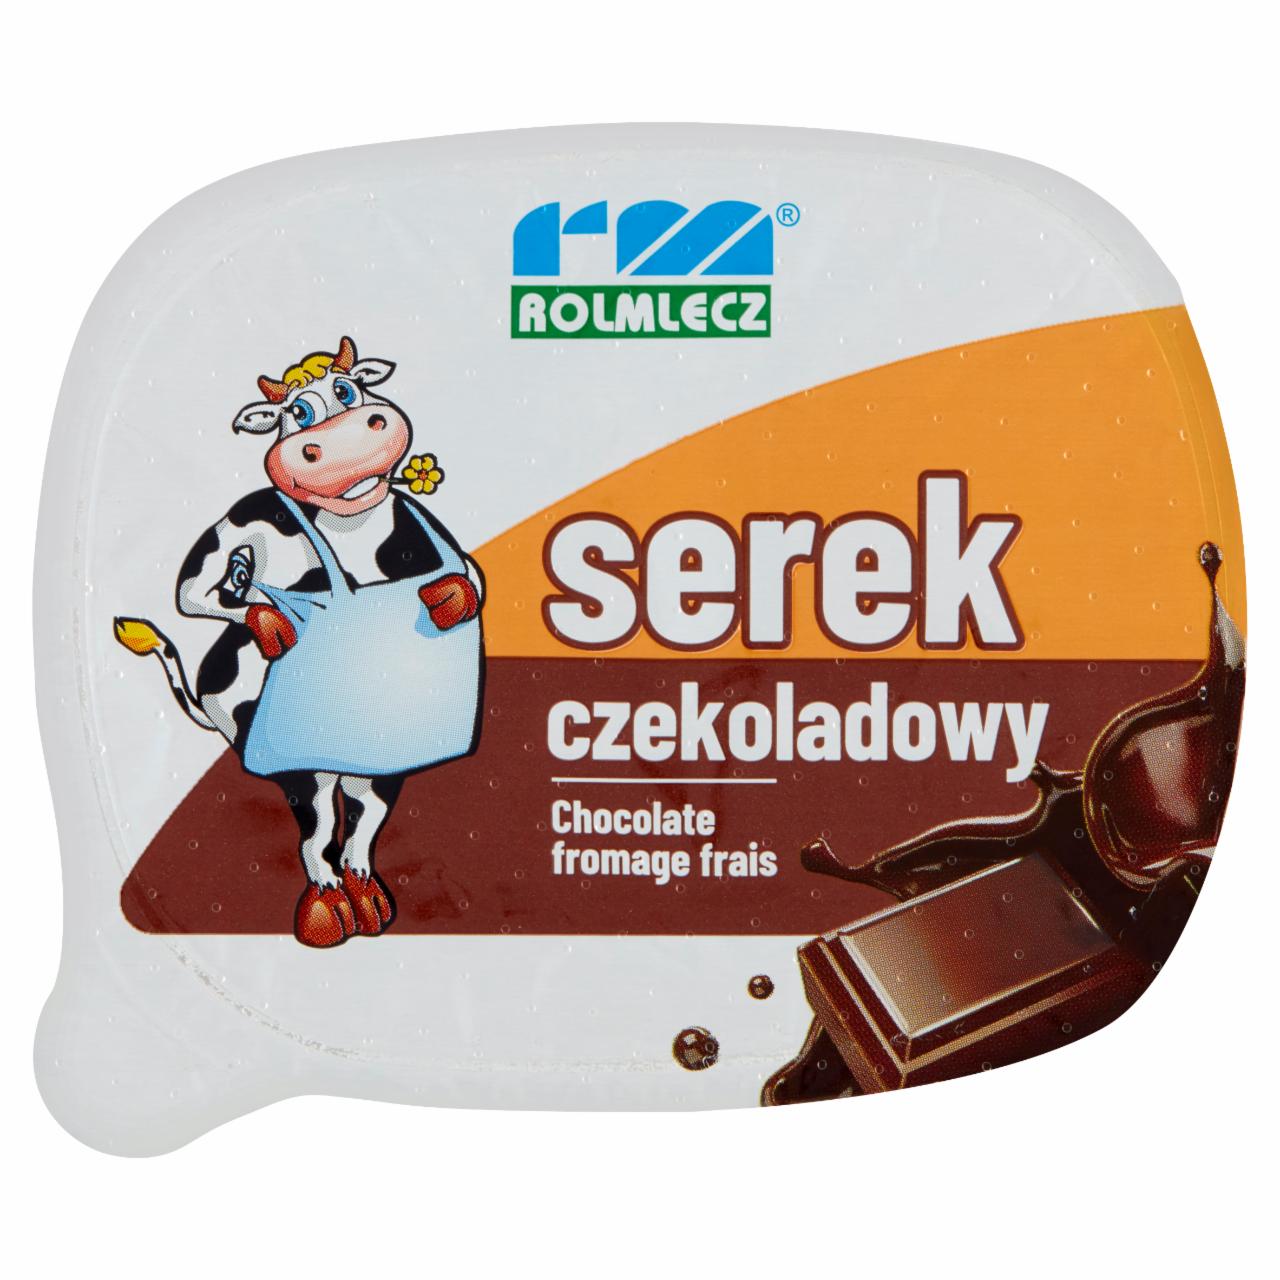 Фото - Сырок шоколадный serek czekoladowy Rolmlecz